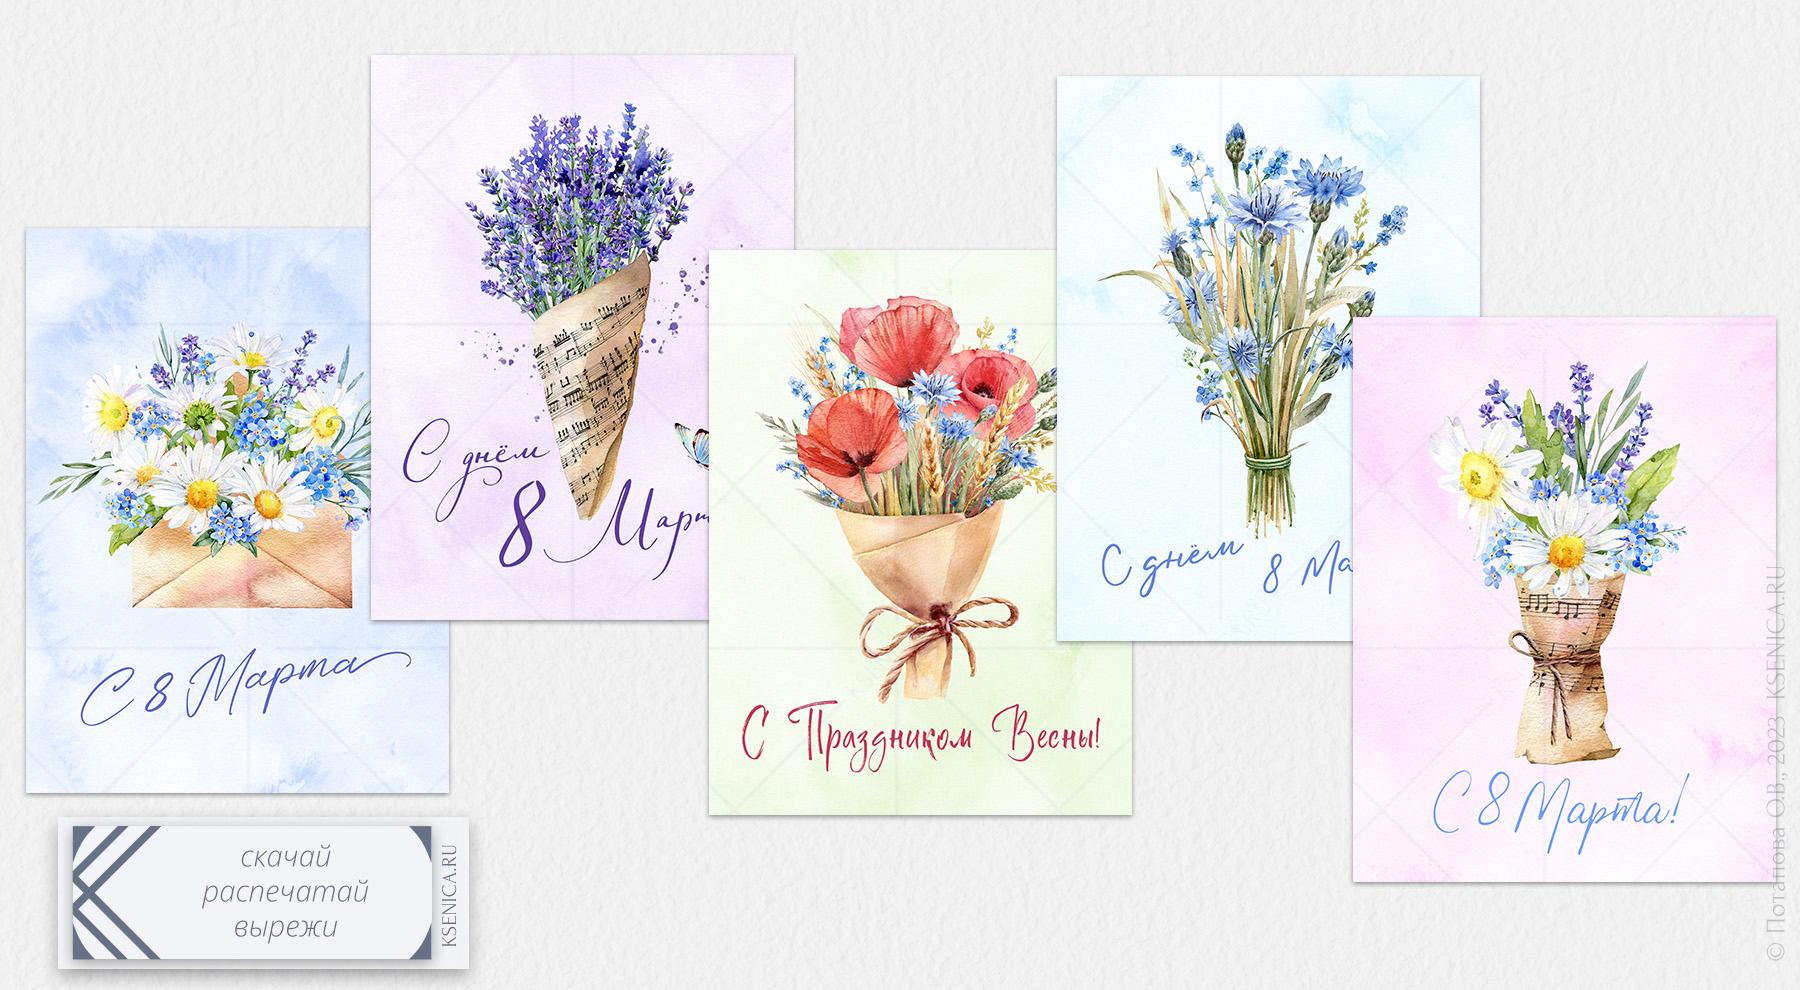 Красивые цветы открытка на 8 марта